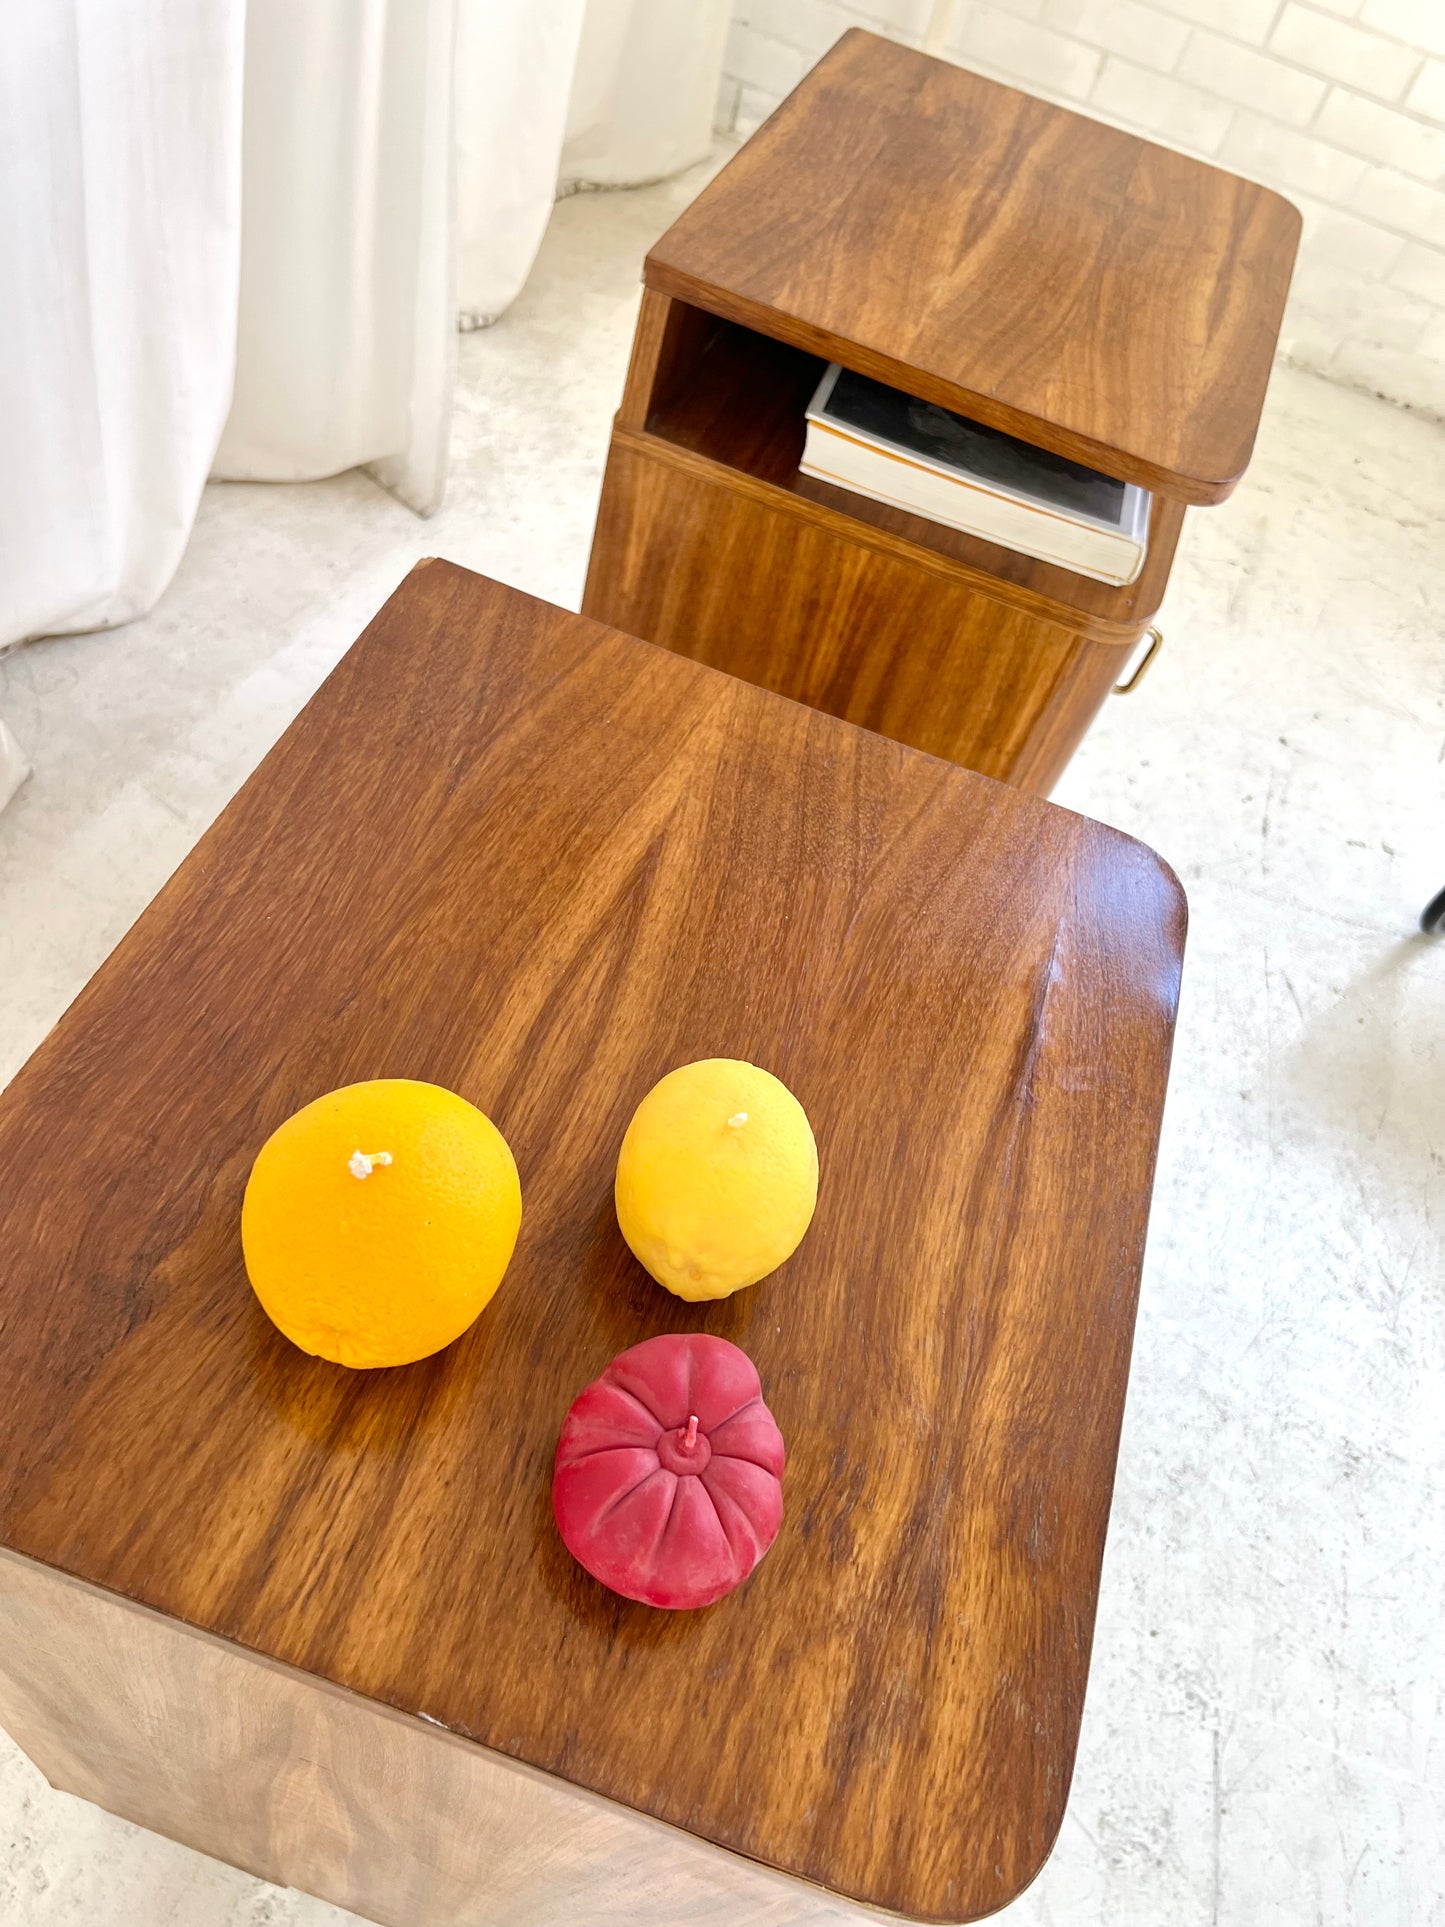 - Set of Two Vintage Wooden Bedside Tables